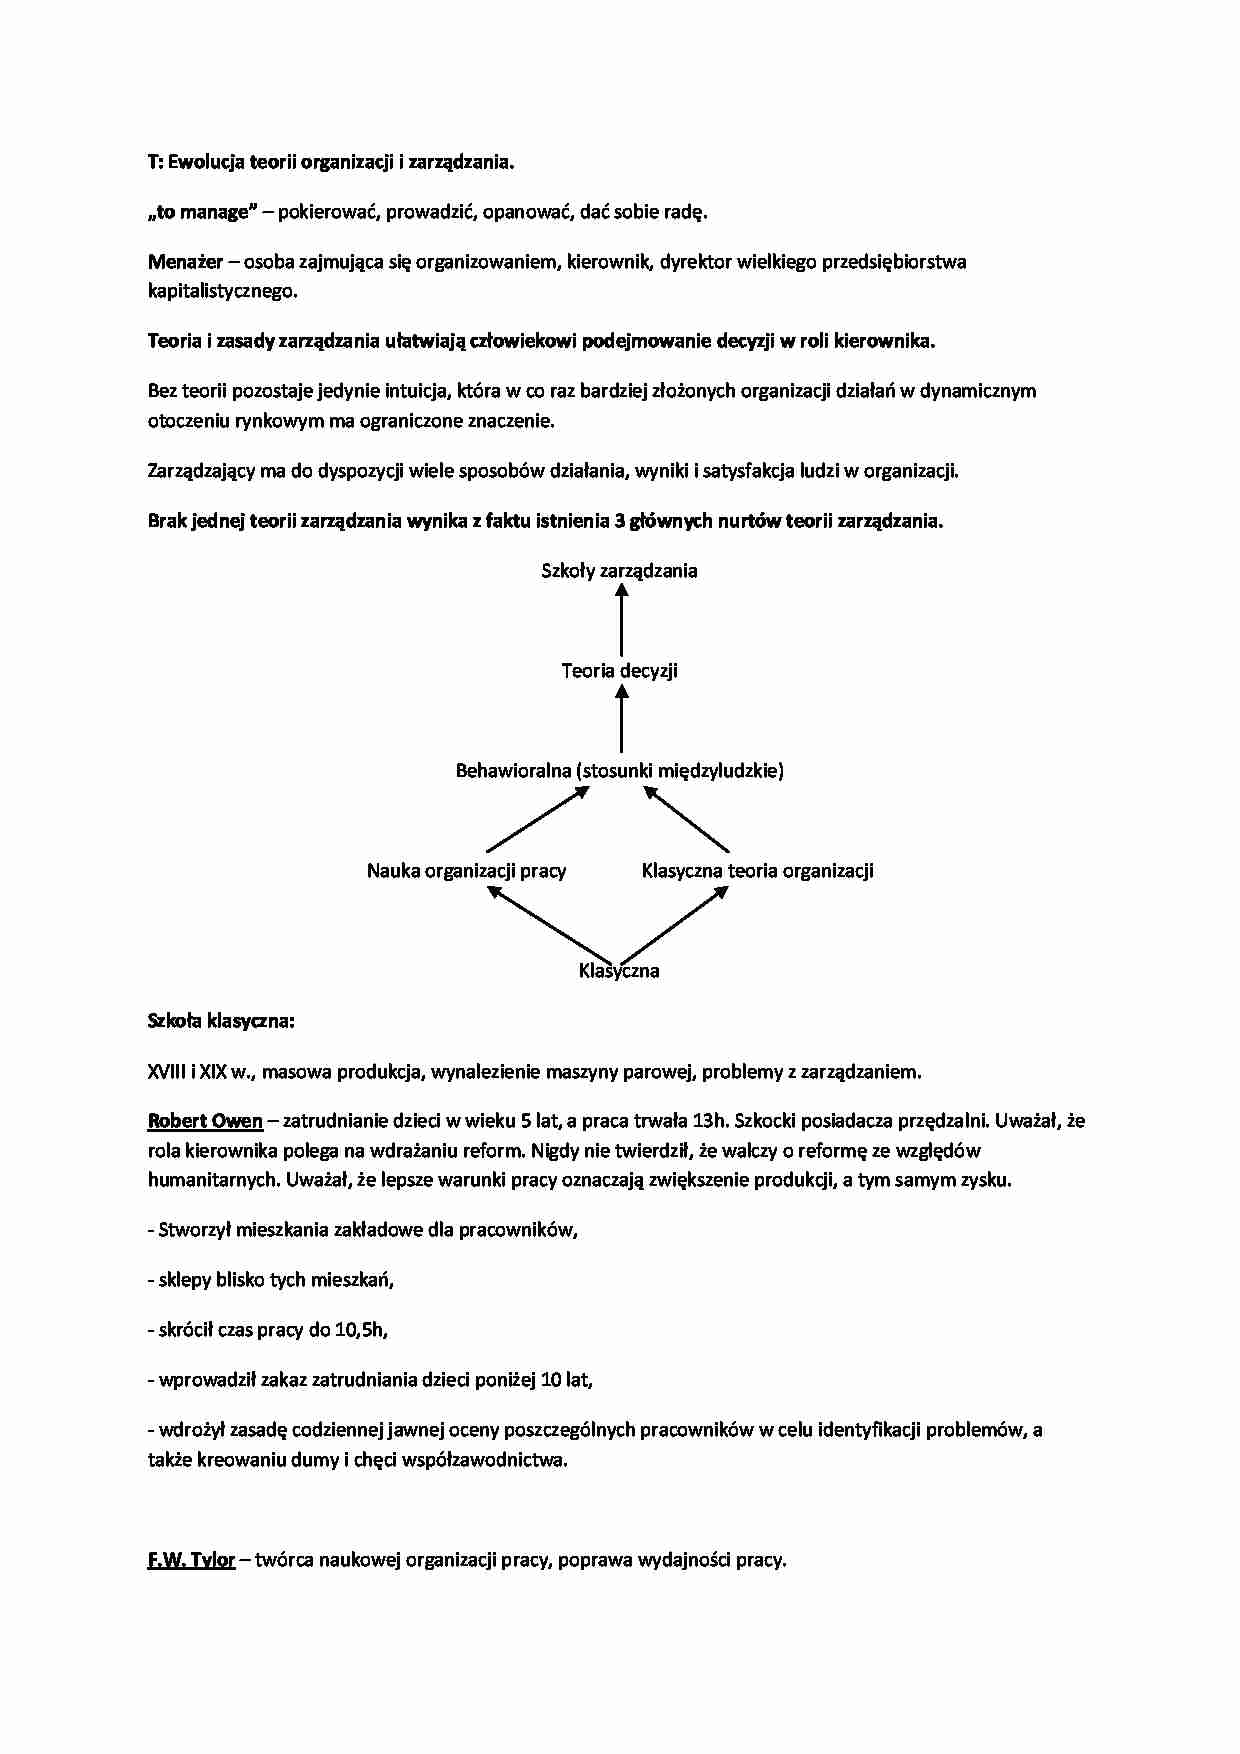 Ewolucja teorii organizacji i zarządzania - strona 1